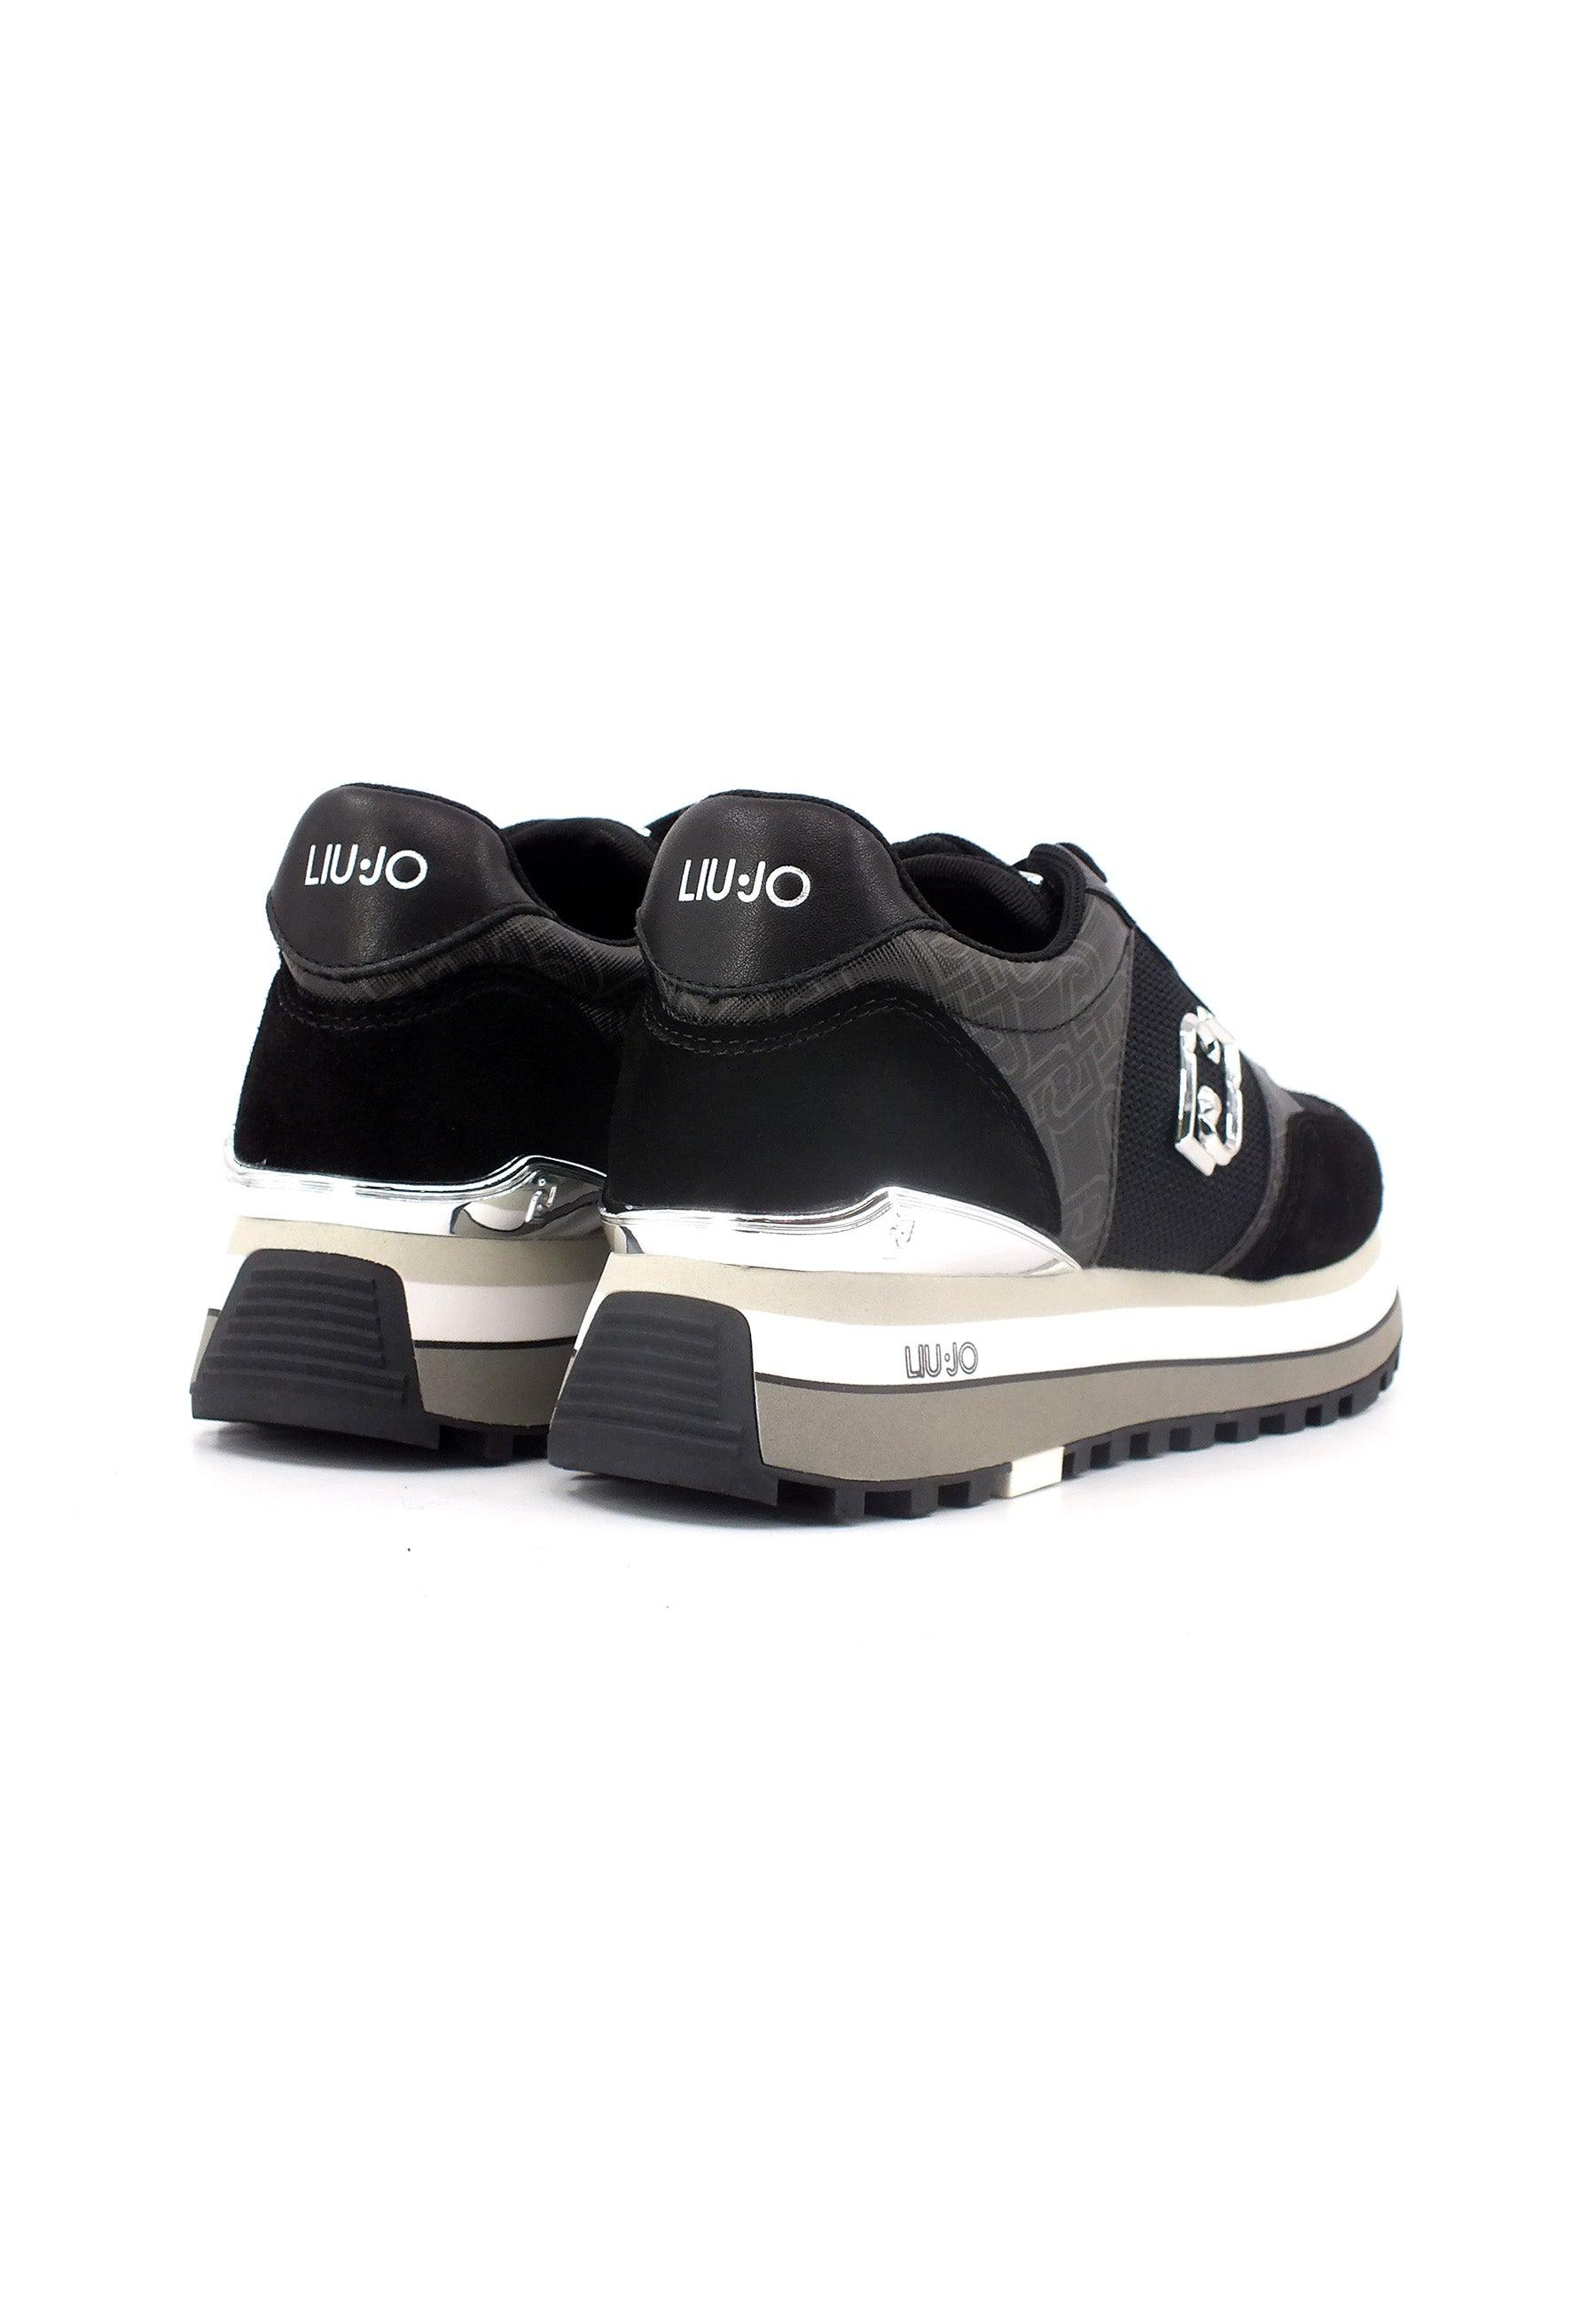 LIU JO Maxi Wonder 57 Sneaker Donna Black BF3007PX165 - Sandrini Calzature e Abbigliamento